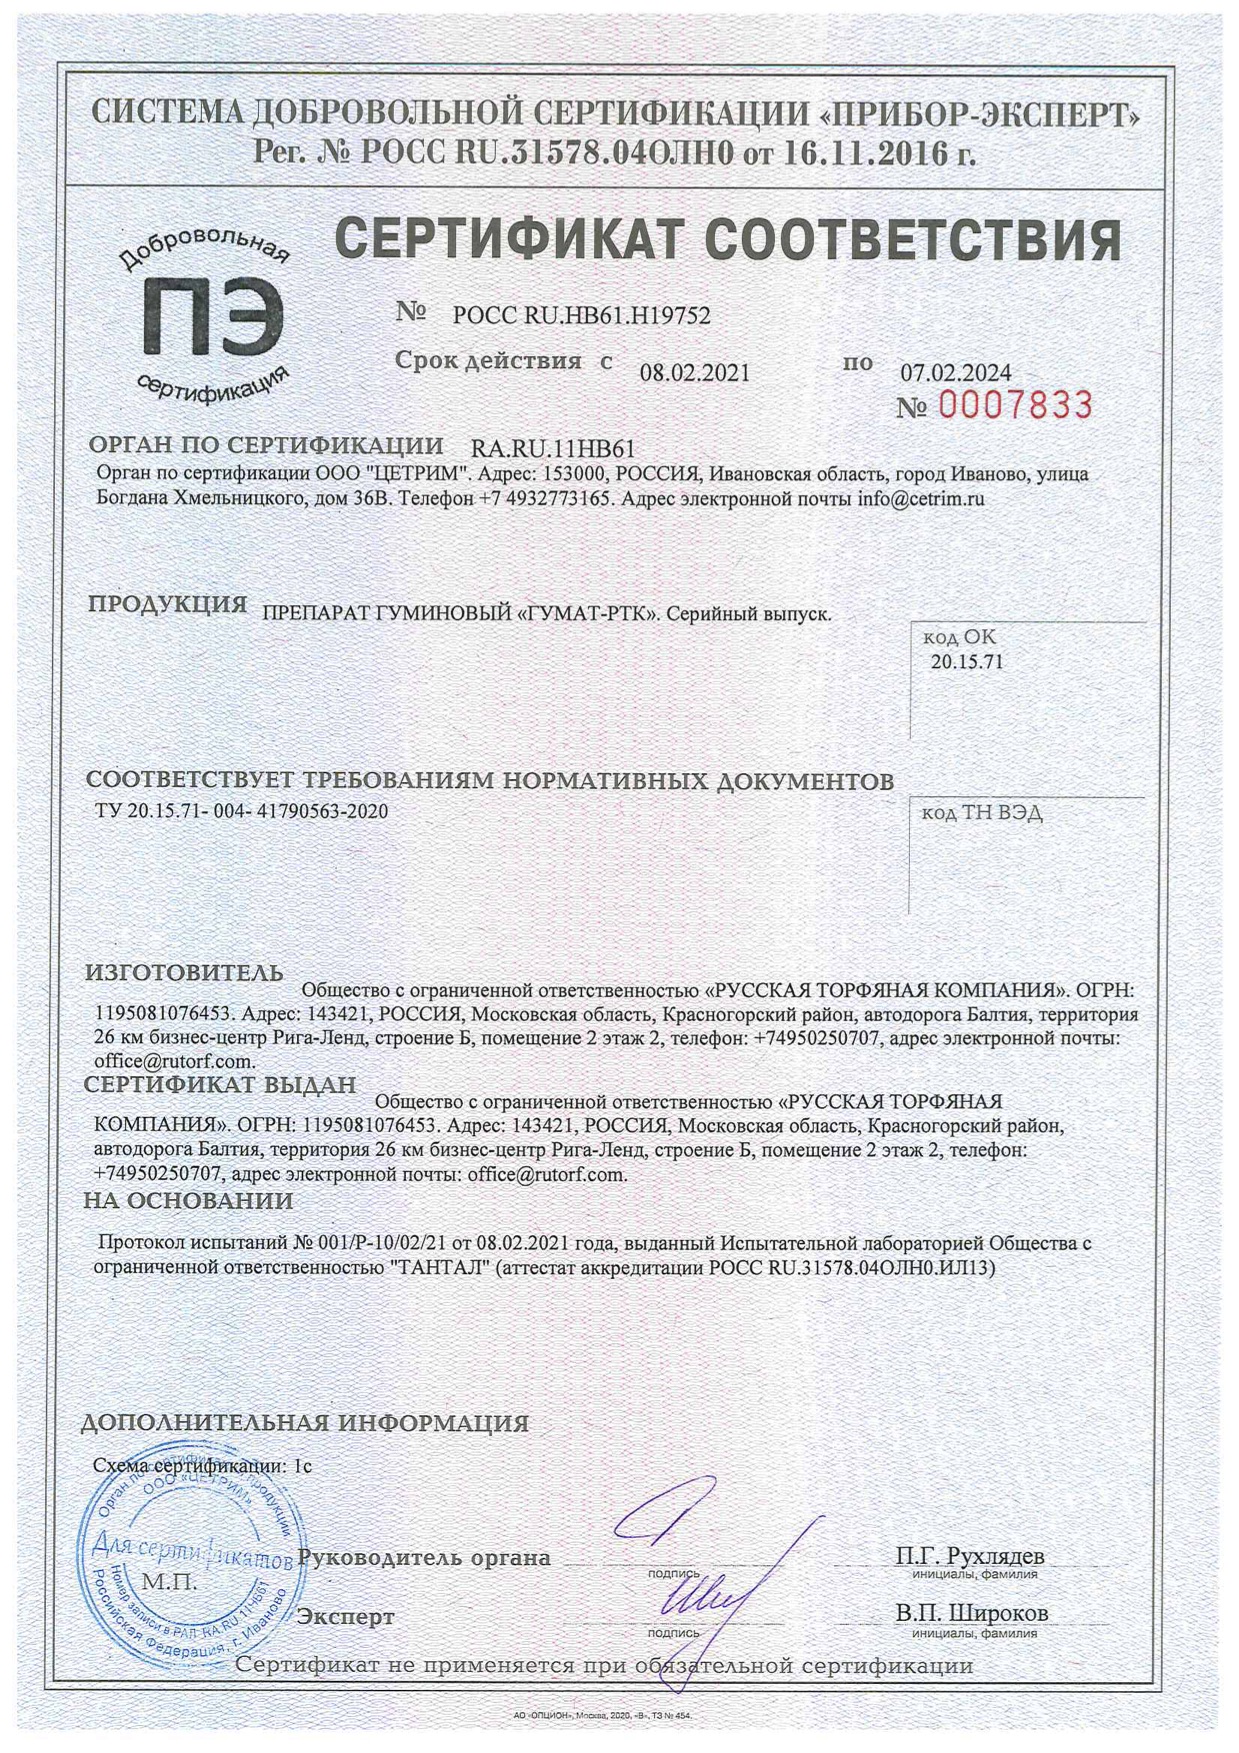 Сертификат соответствия гуминовый препарат Гумат-РТК